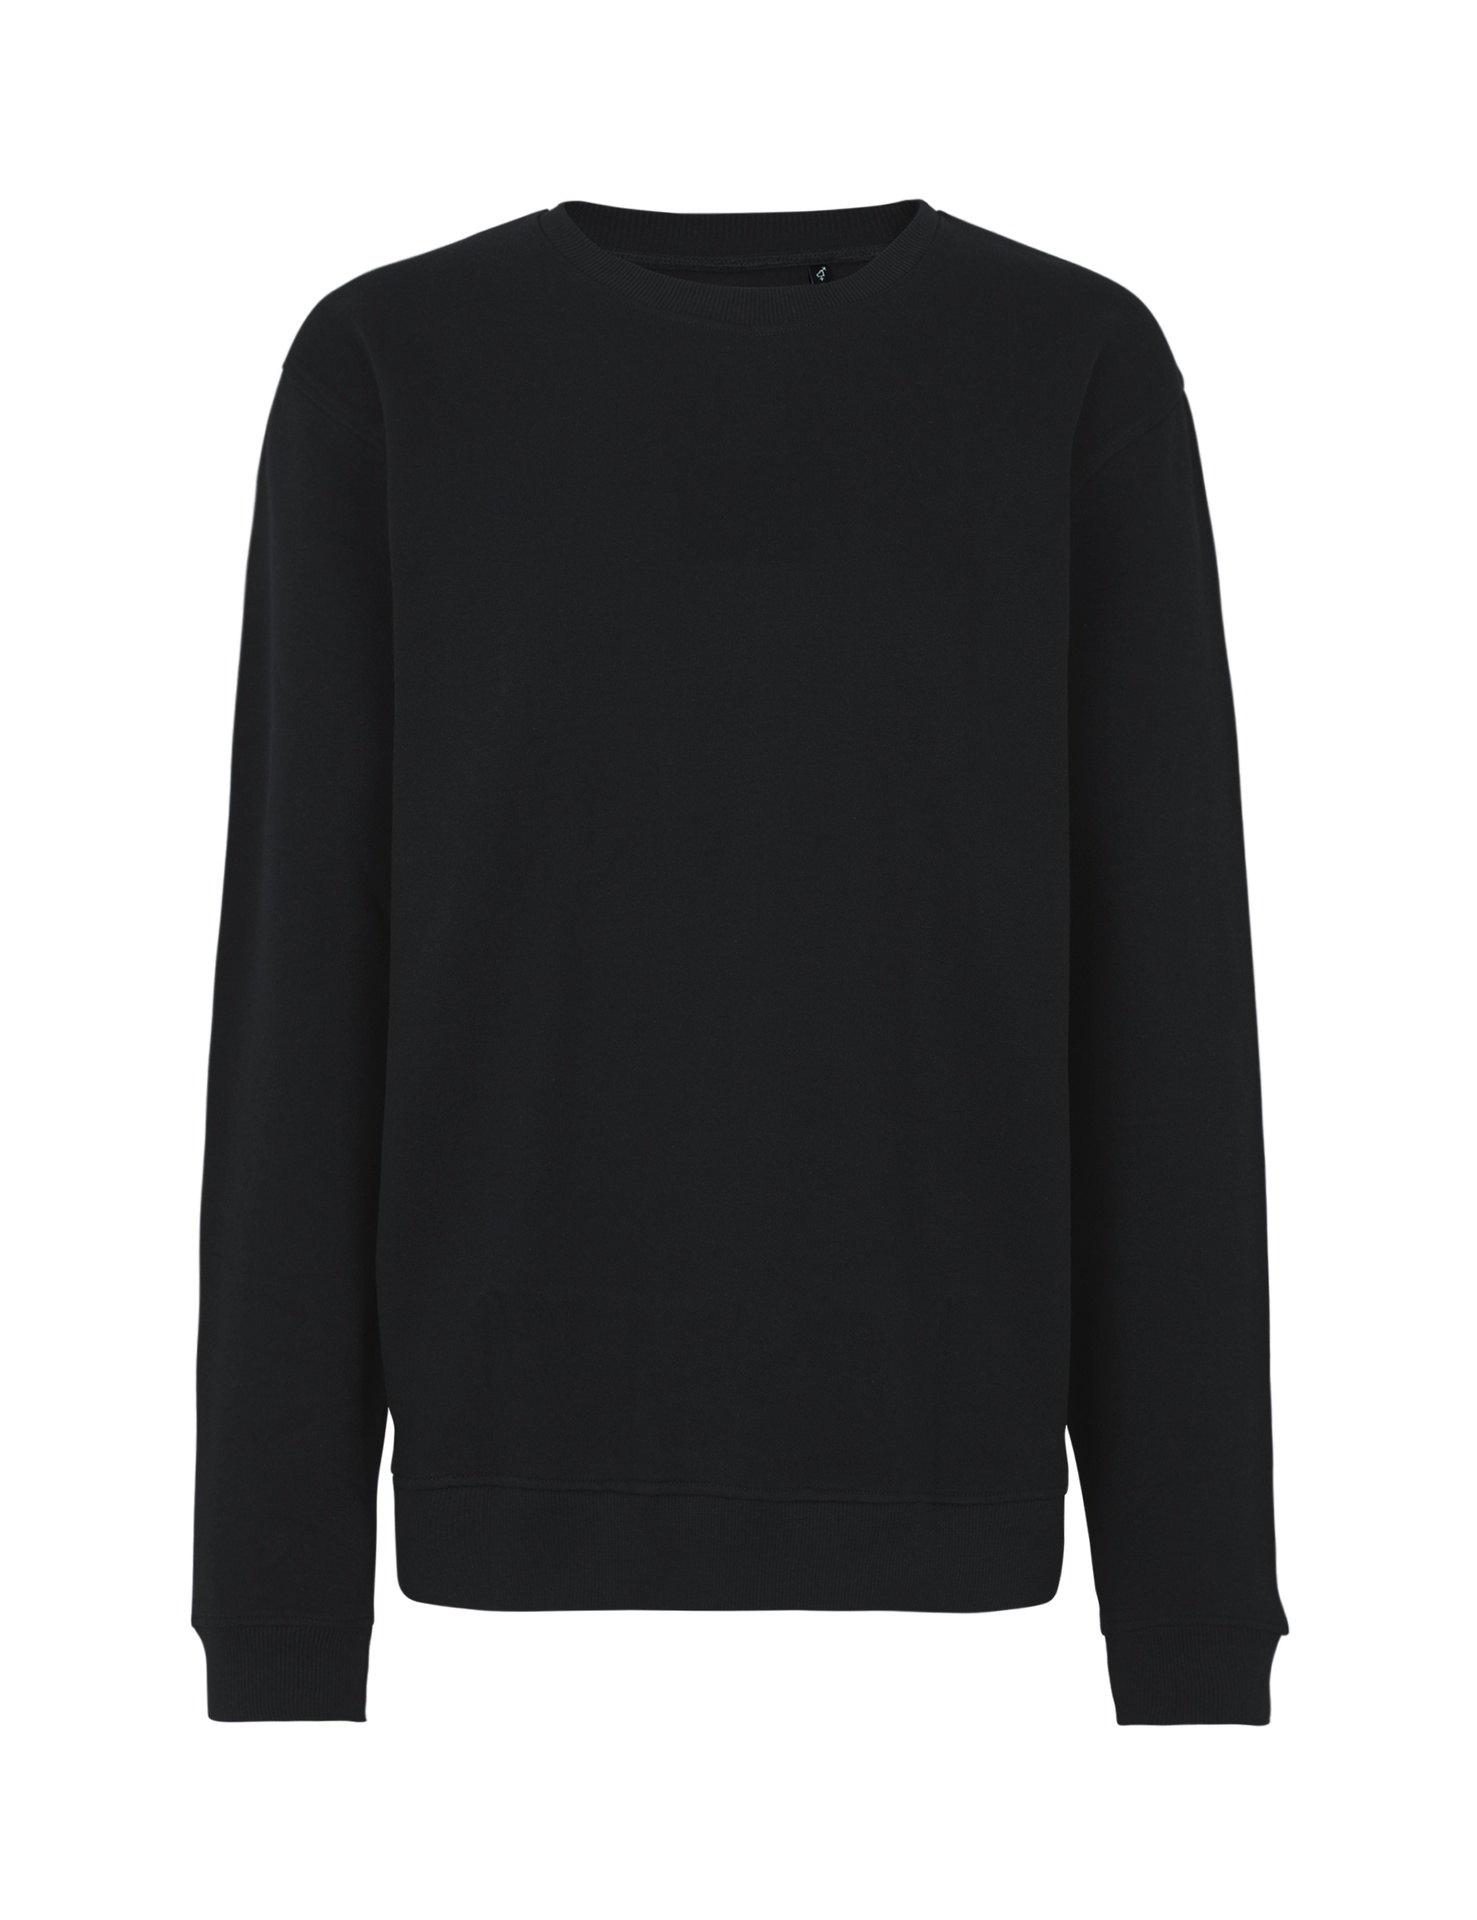 [PR/03529] Unisex Workwear Sweatshirt (Black 03, 2XL)